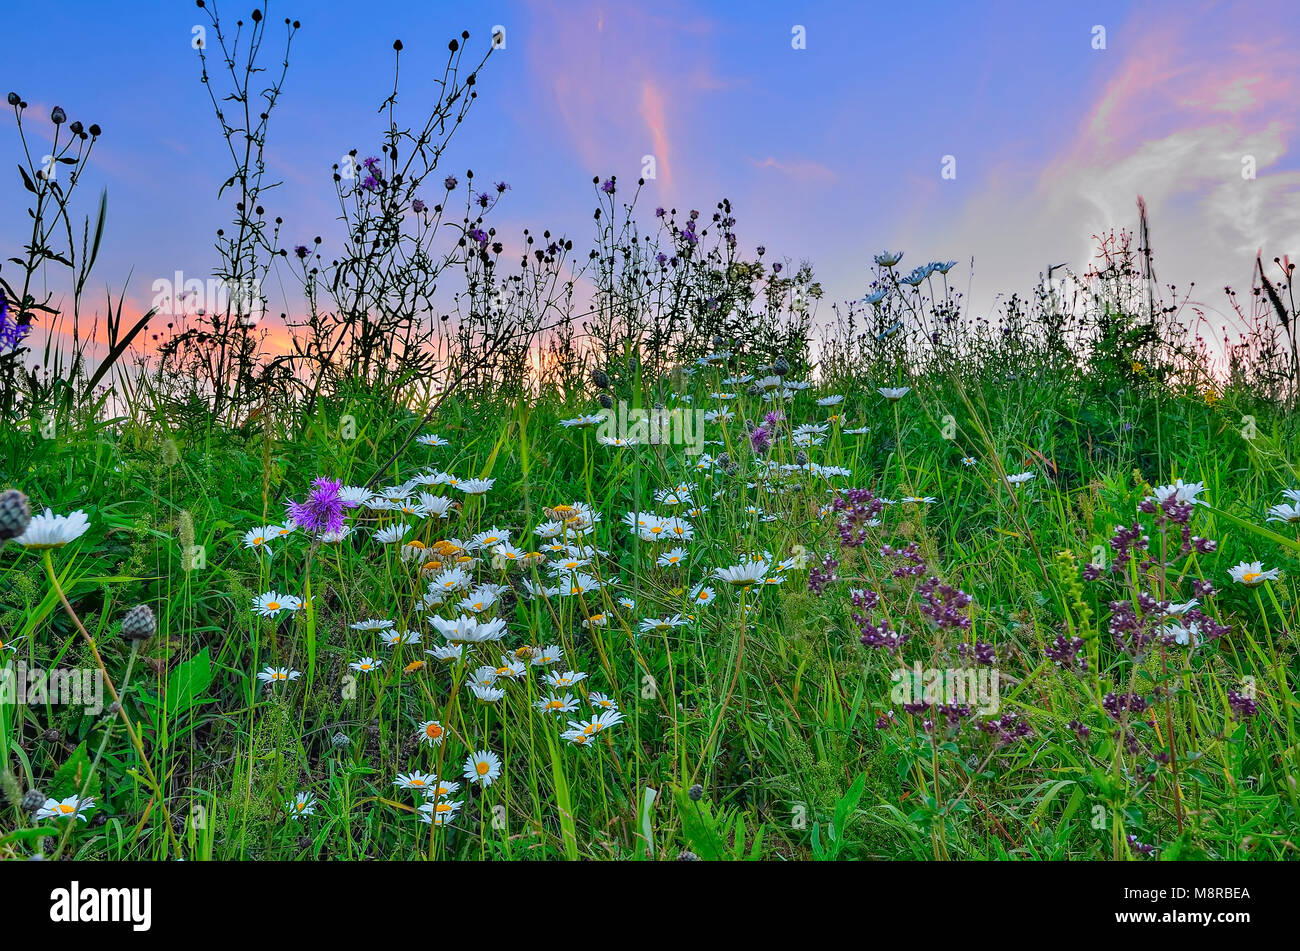 Crepúsculo rosa a través de una pradera con floración verano chamomiles, orégano y otras aromáticas, medicinales y melíferas flores y hierbas - un romántico rur Foto de stock